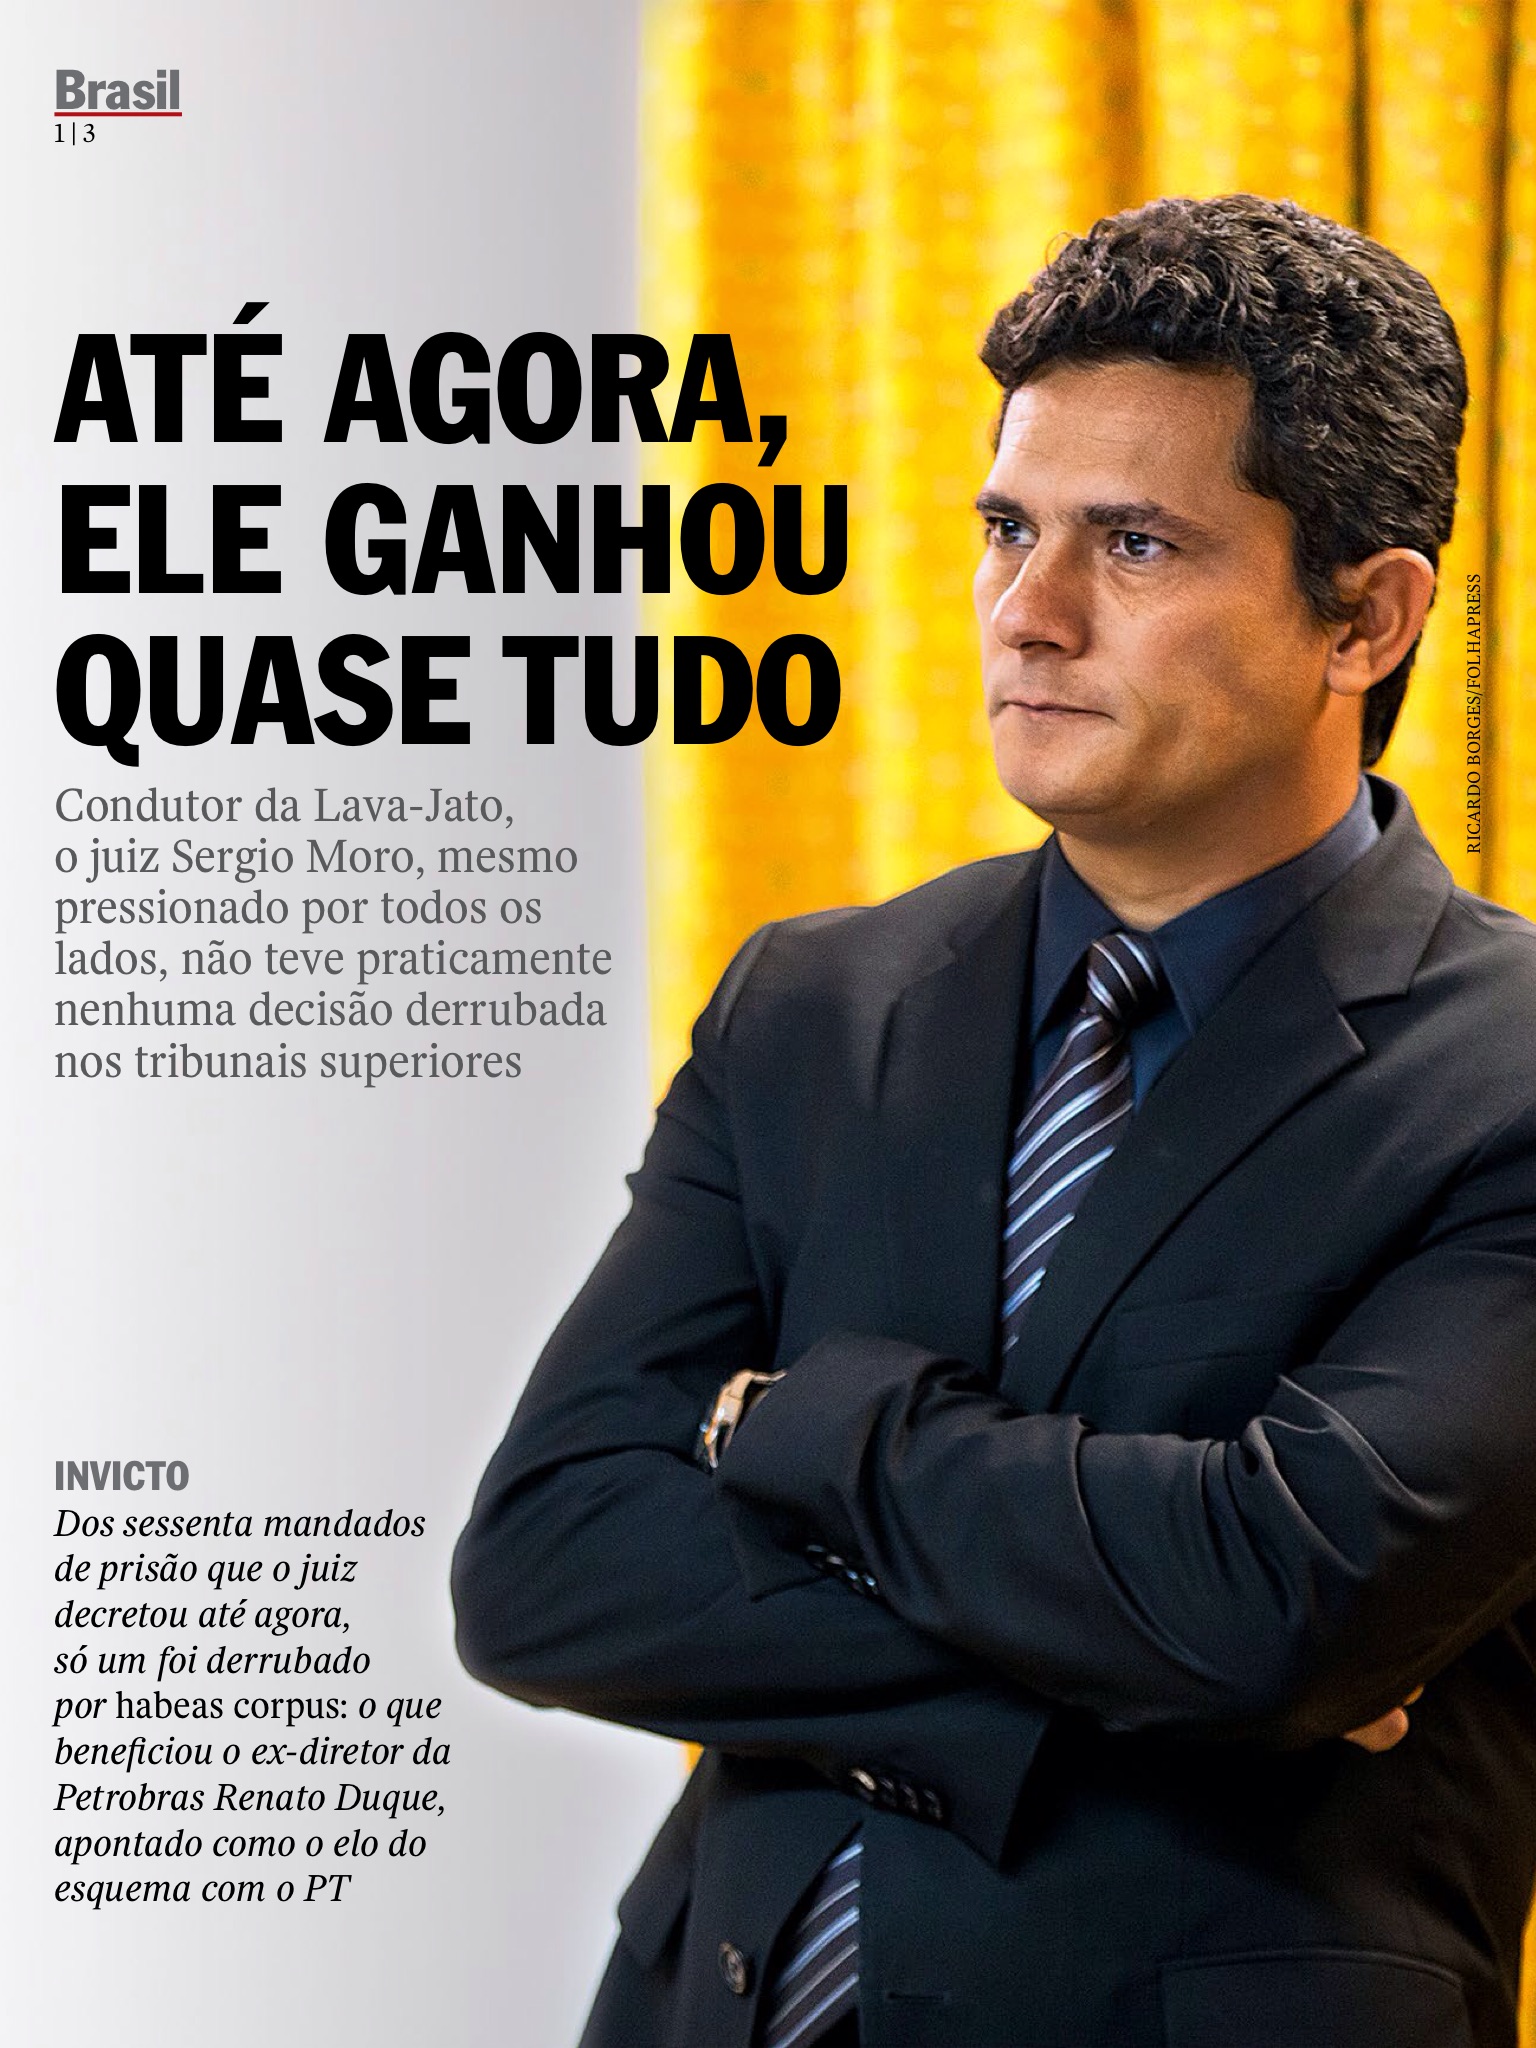 Juiz Sérgio Moro um dos homens mais influentes do Brasil